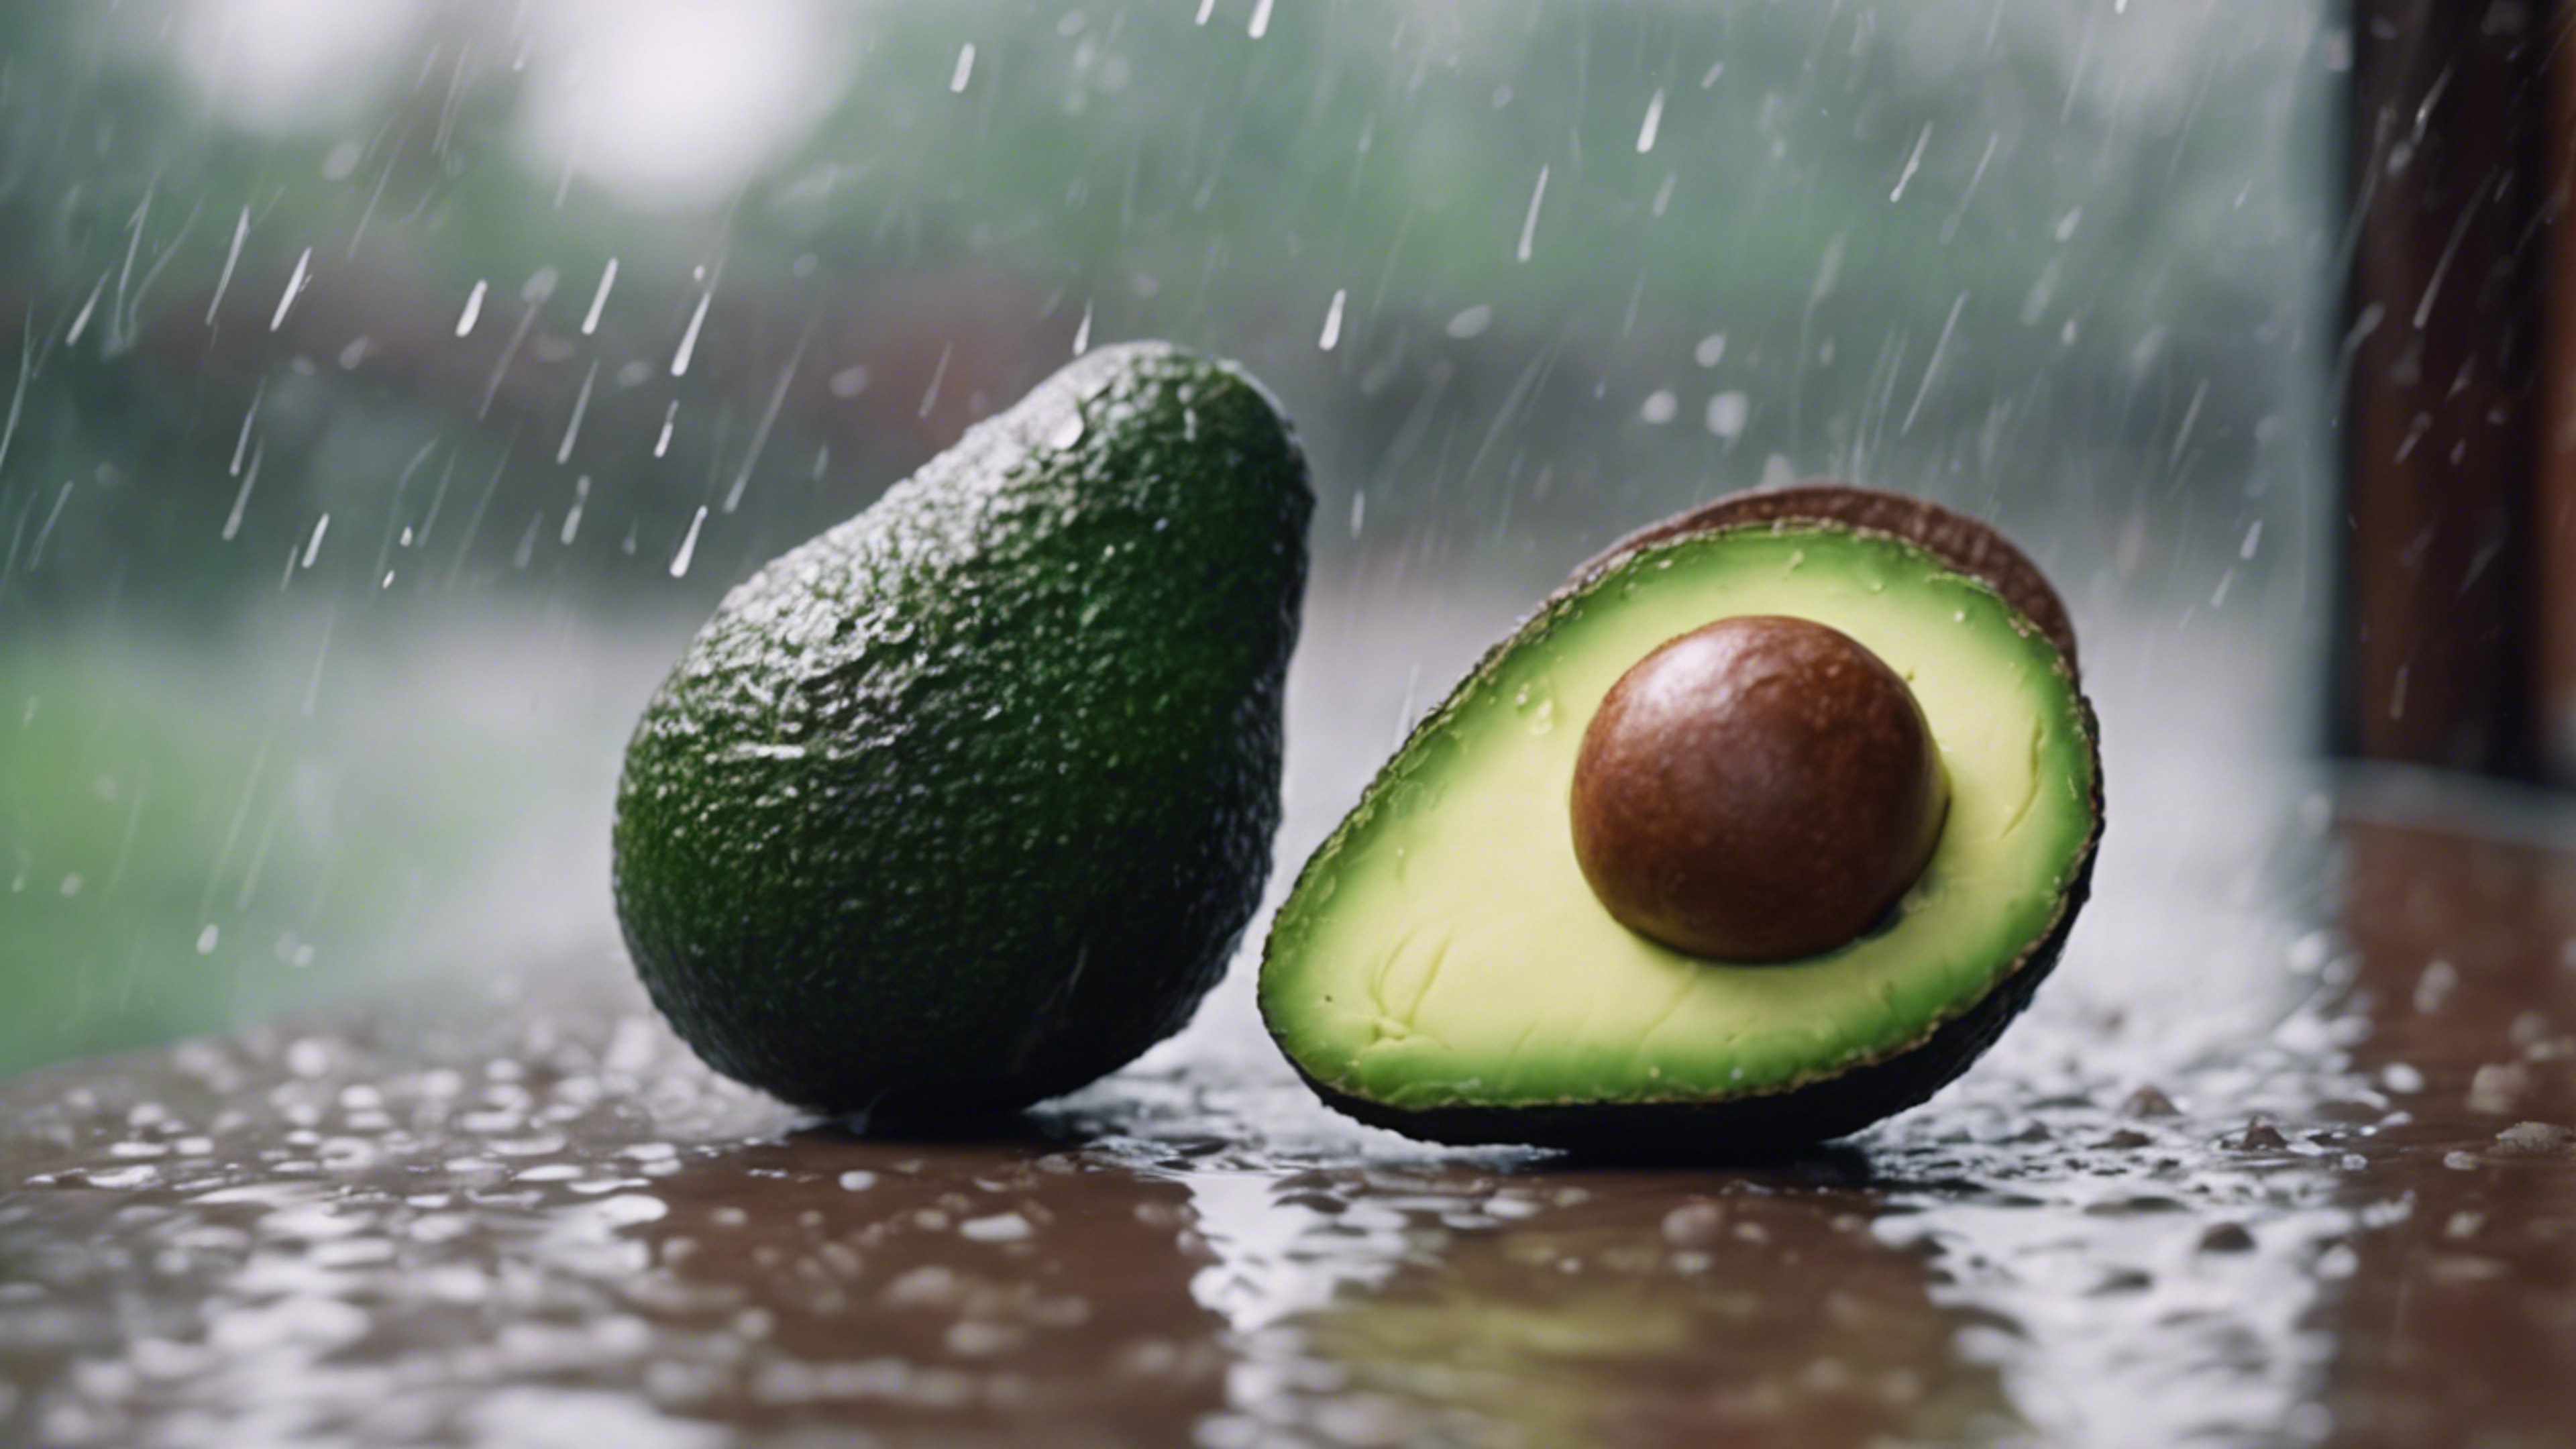 An adorable avocado in a quiet reflection on a rainy day Sfondo[1229e2b9e9634c7f8c86]